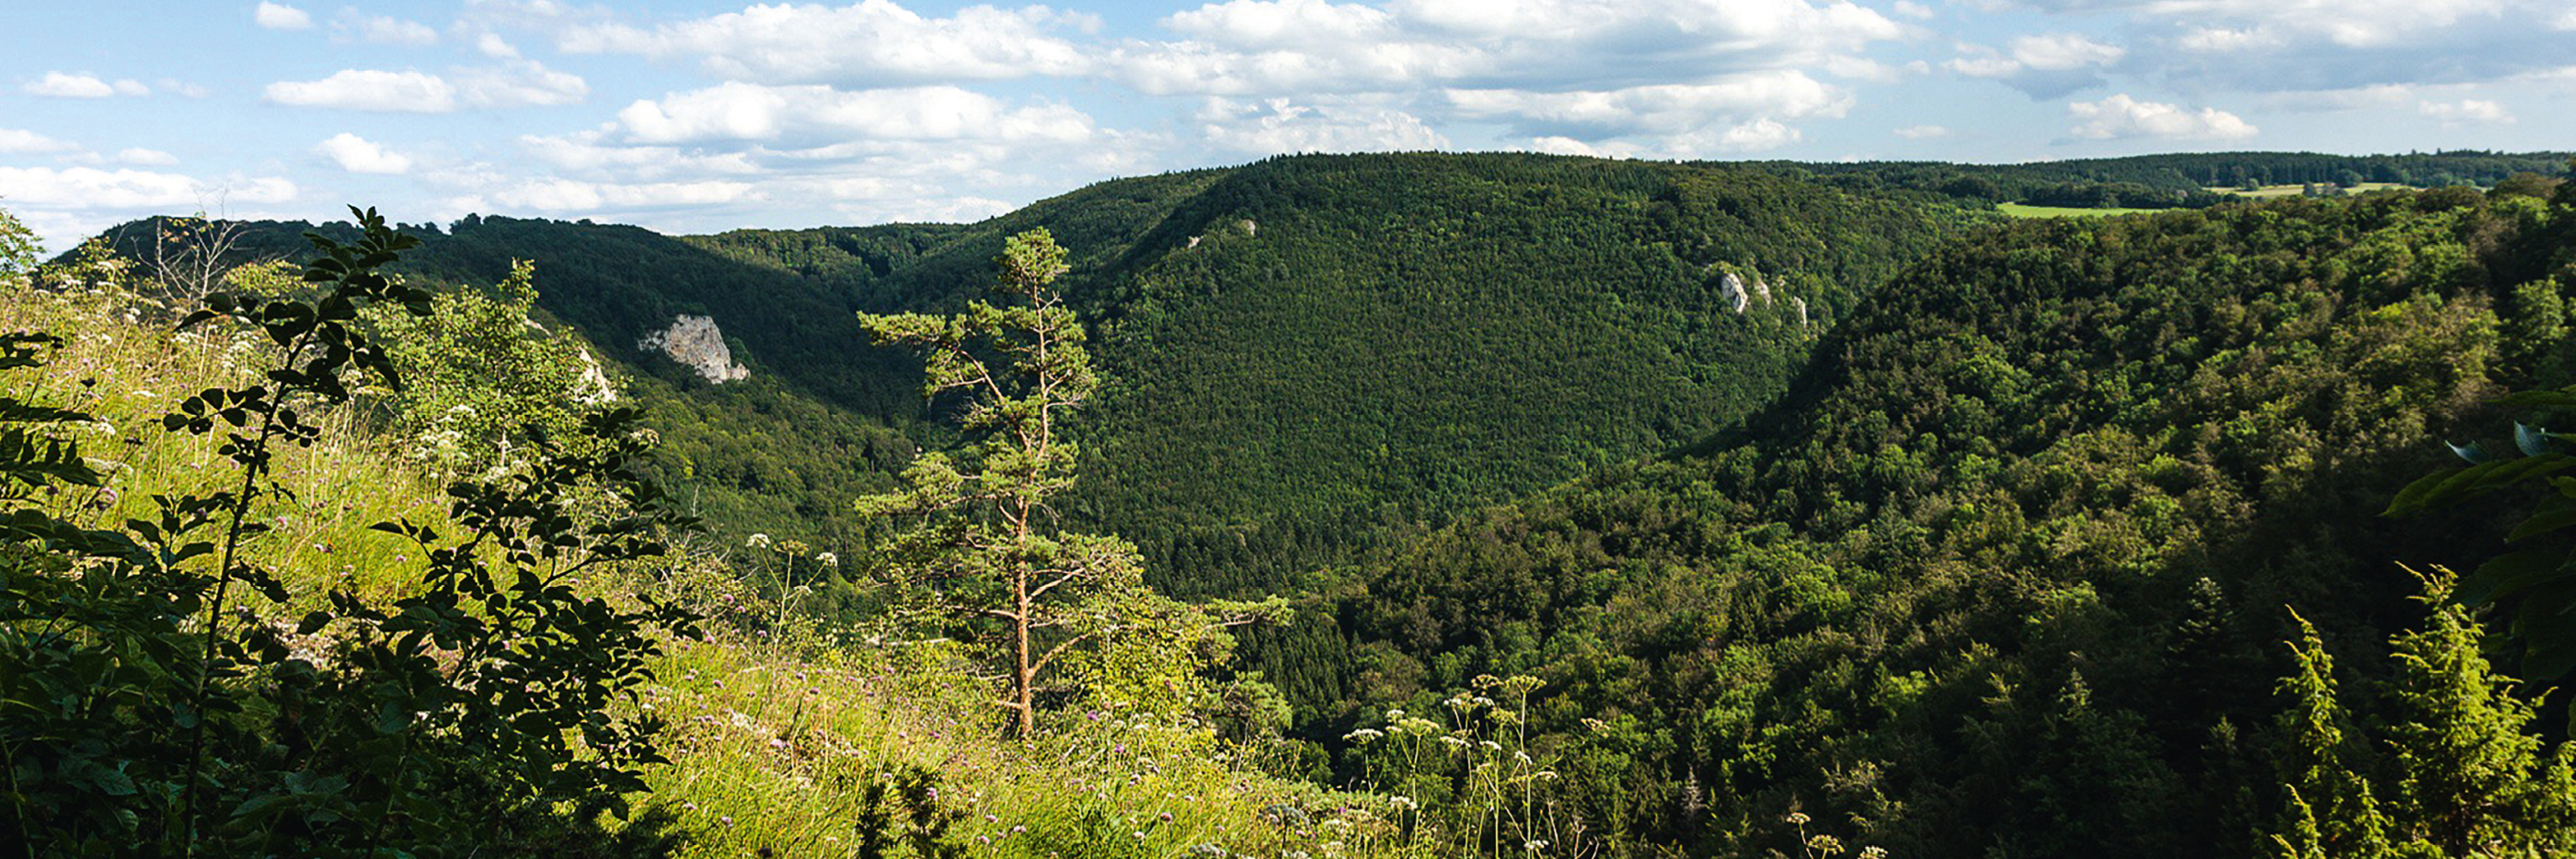 Landschaftsbild von der Schwäbischen Alb im Sommer, grüne Wiese mit Baum und Büschen im Vordergrund, bewaldete Hänge im Hintergrund| mey®